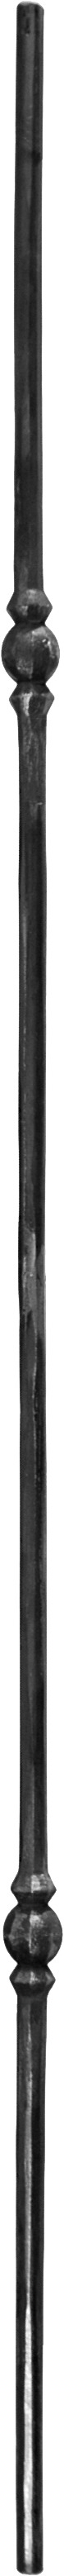 Barreaux à facettes rond de 10-12  mm amincis double décors boules  H1000 . Largeur 25 mm 